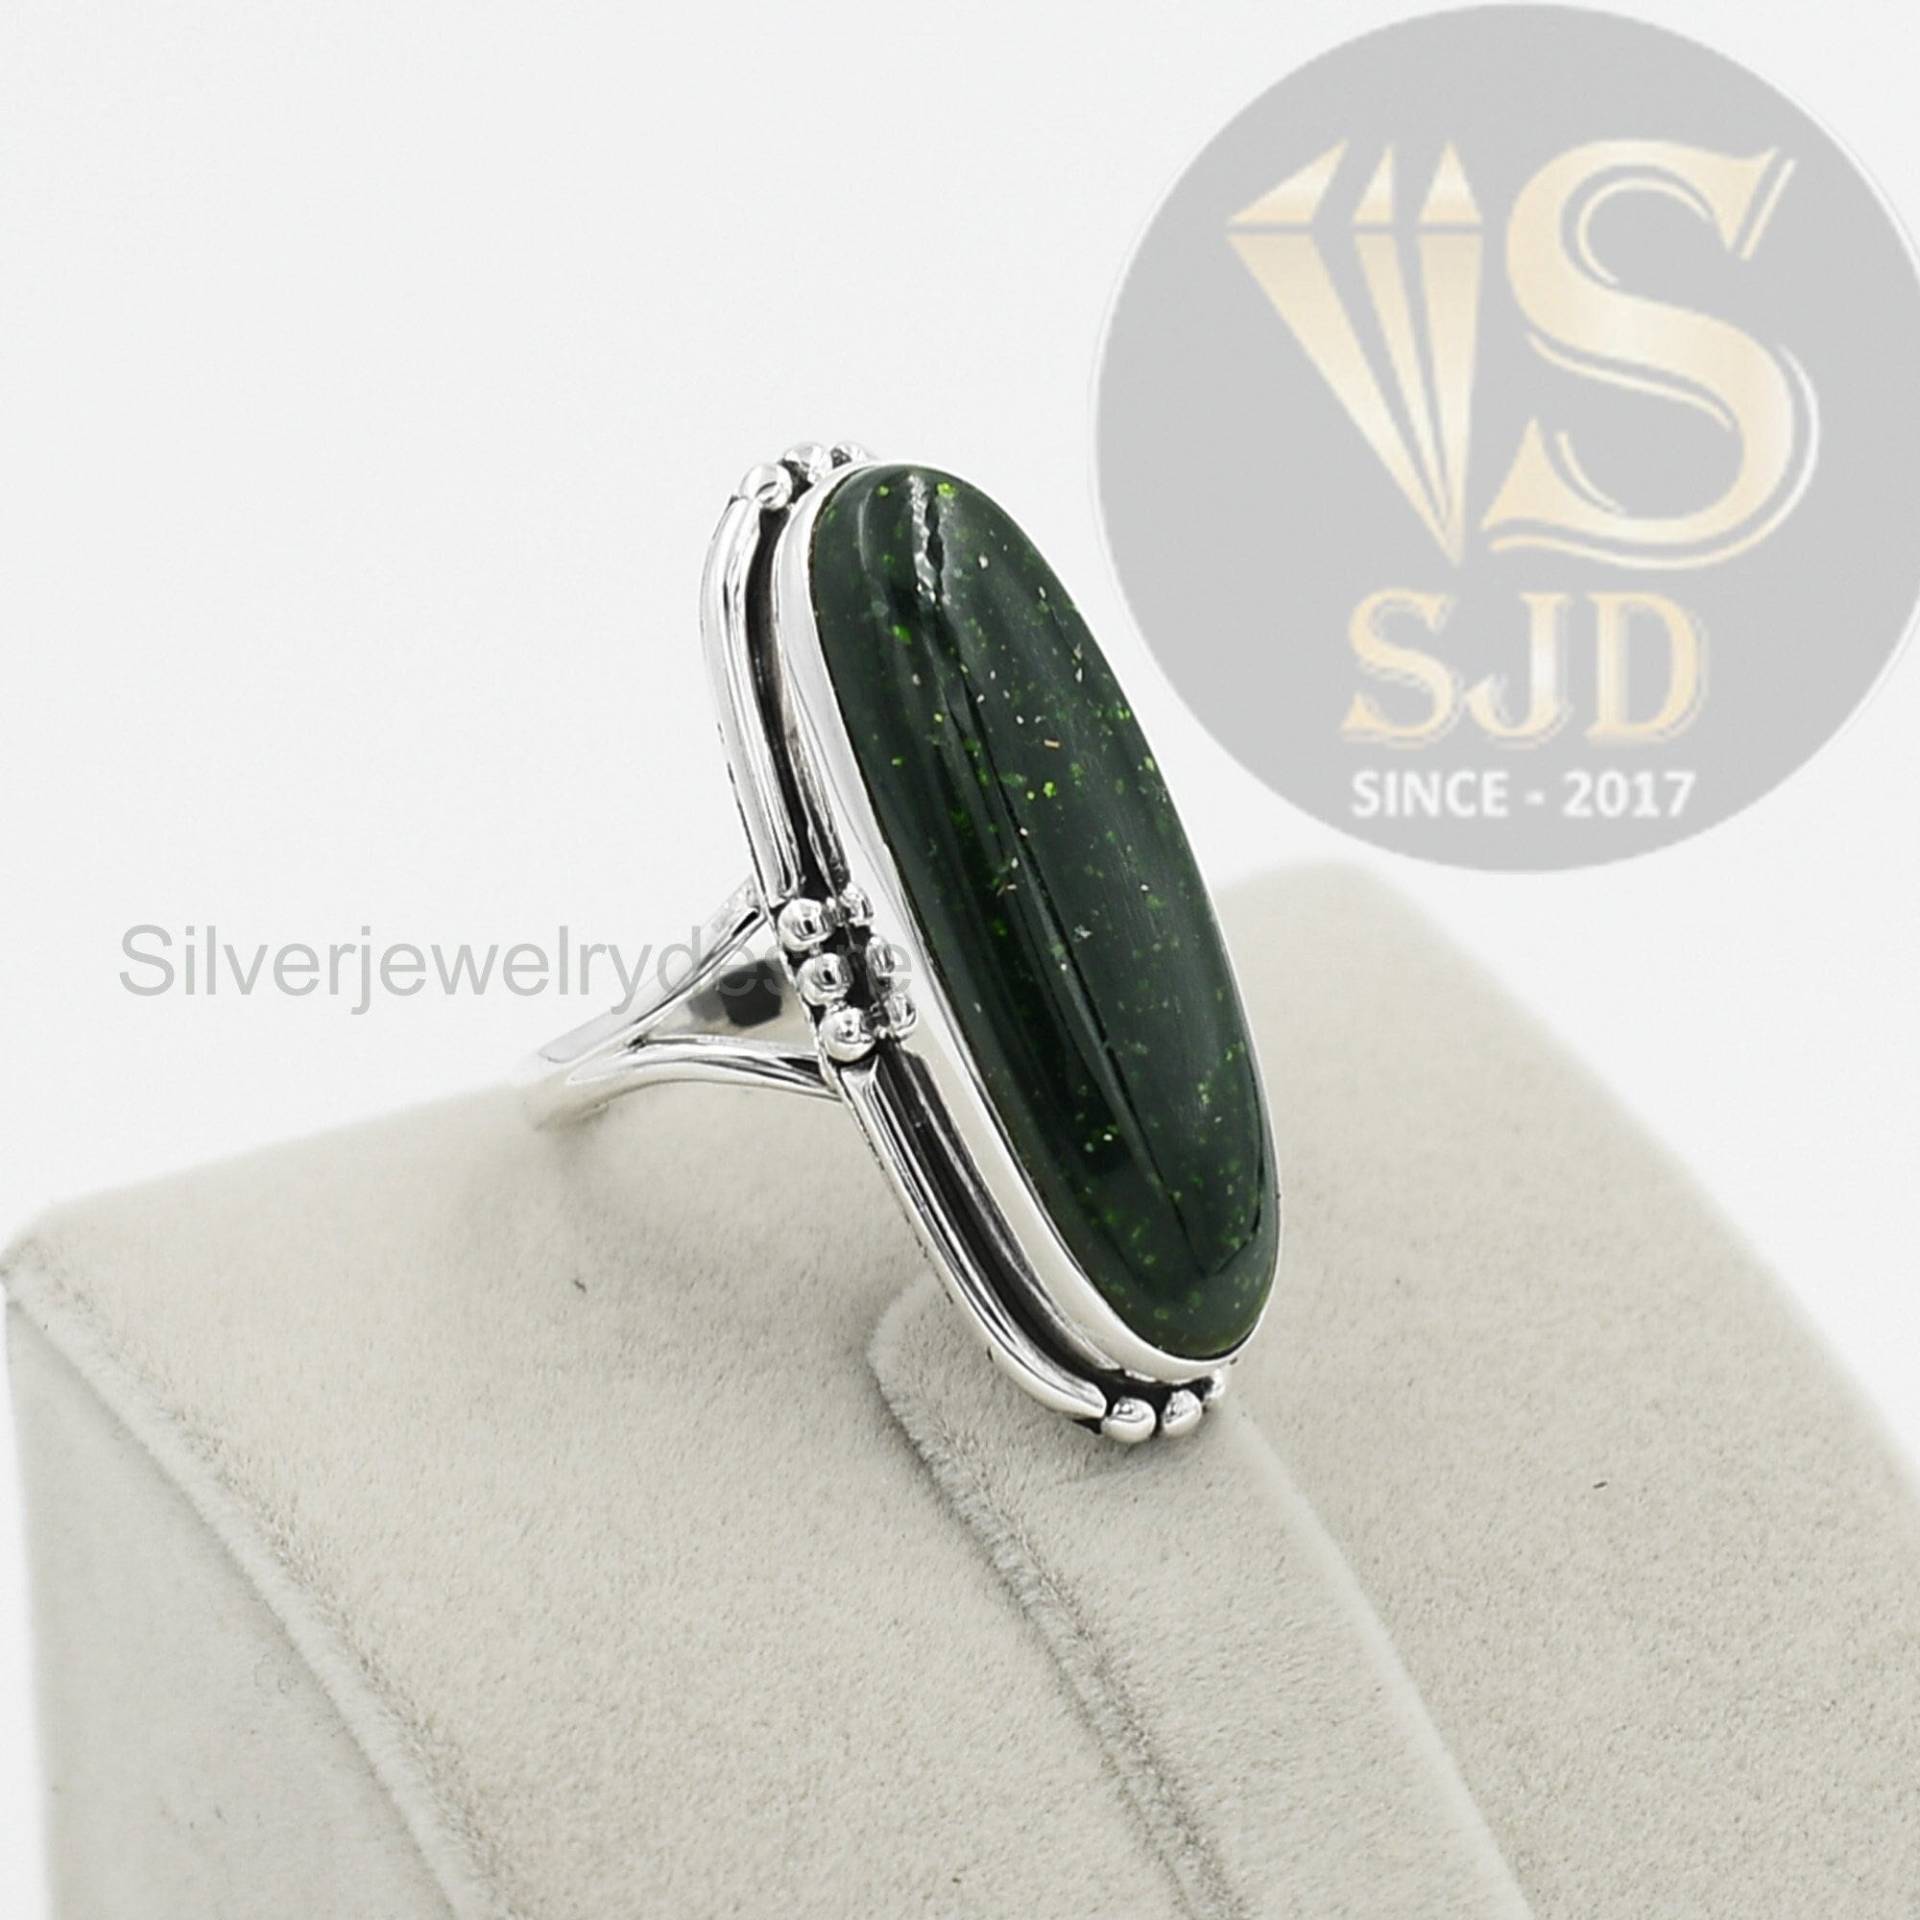 Leuchtender Grün Goldstone Ring, 925 Sterling Silber, 10x30 Mm Lang Oval Sonnenstein Edelstein Ehering, Damenring Ring von silverjewelrydesire